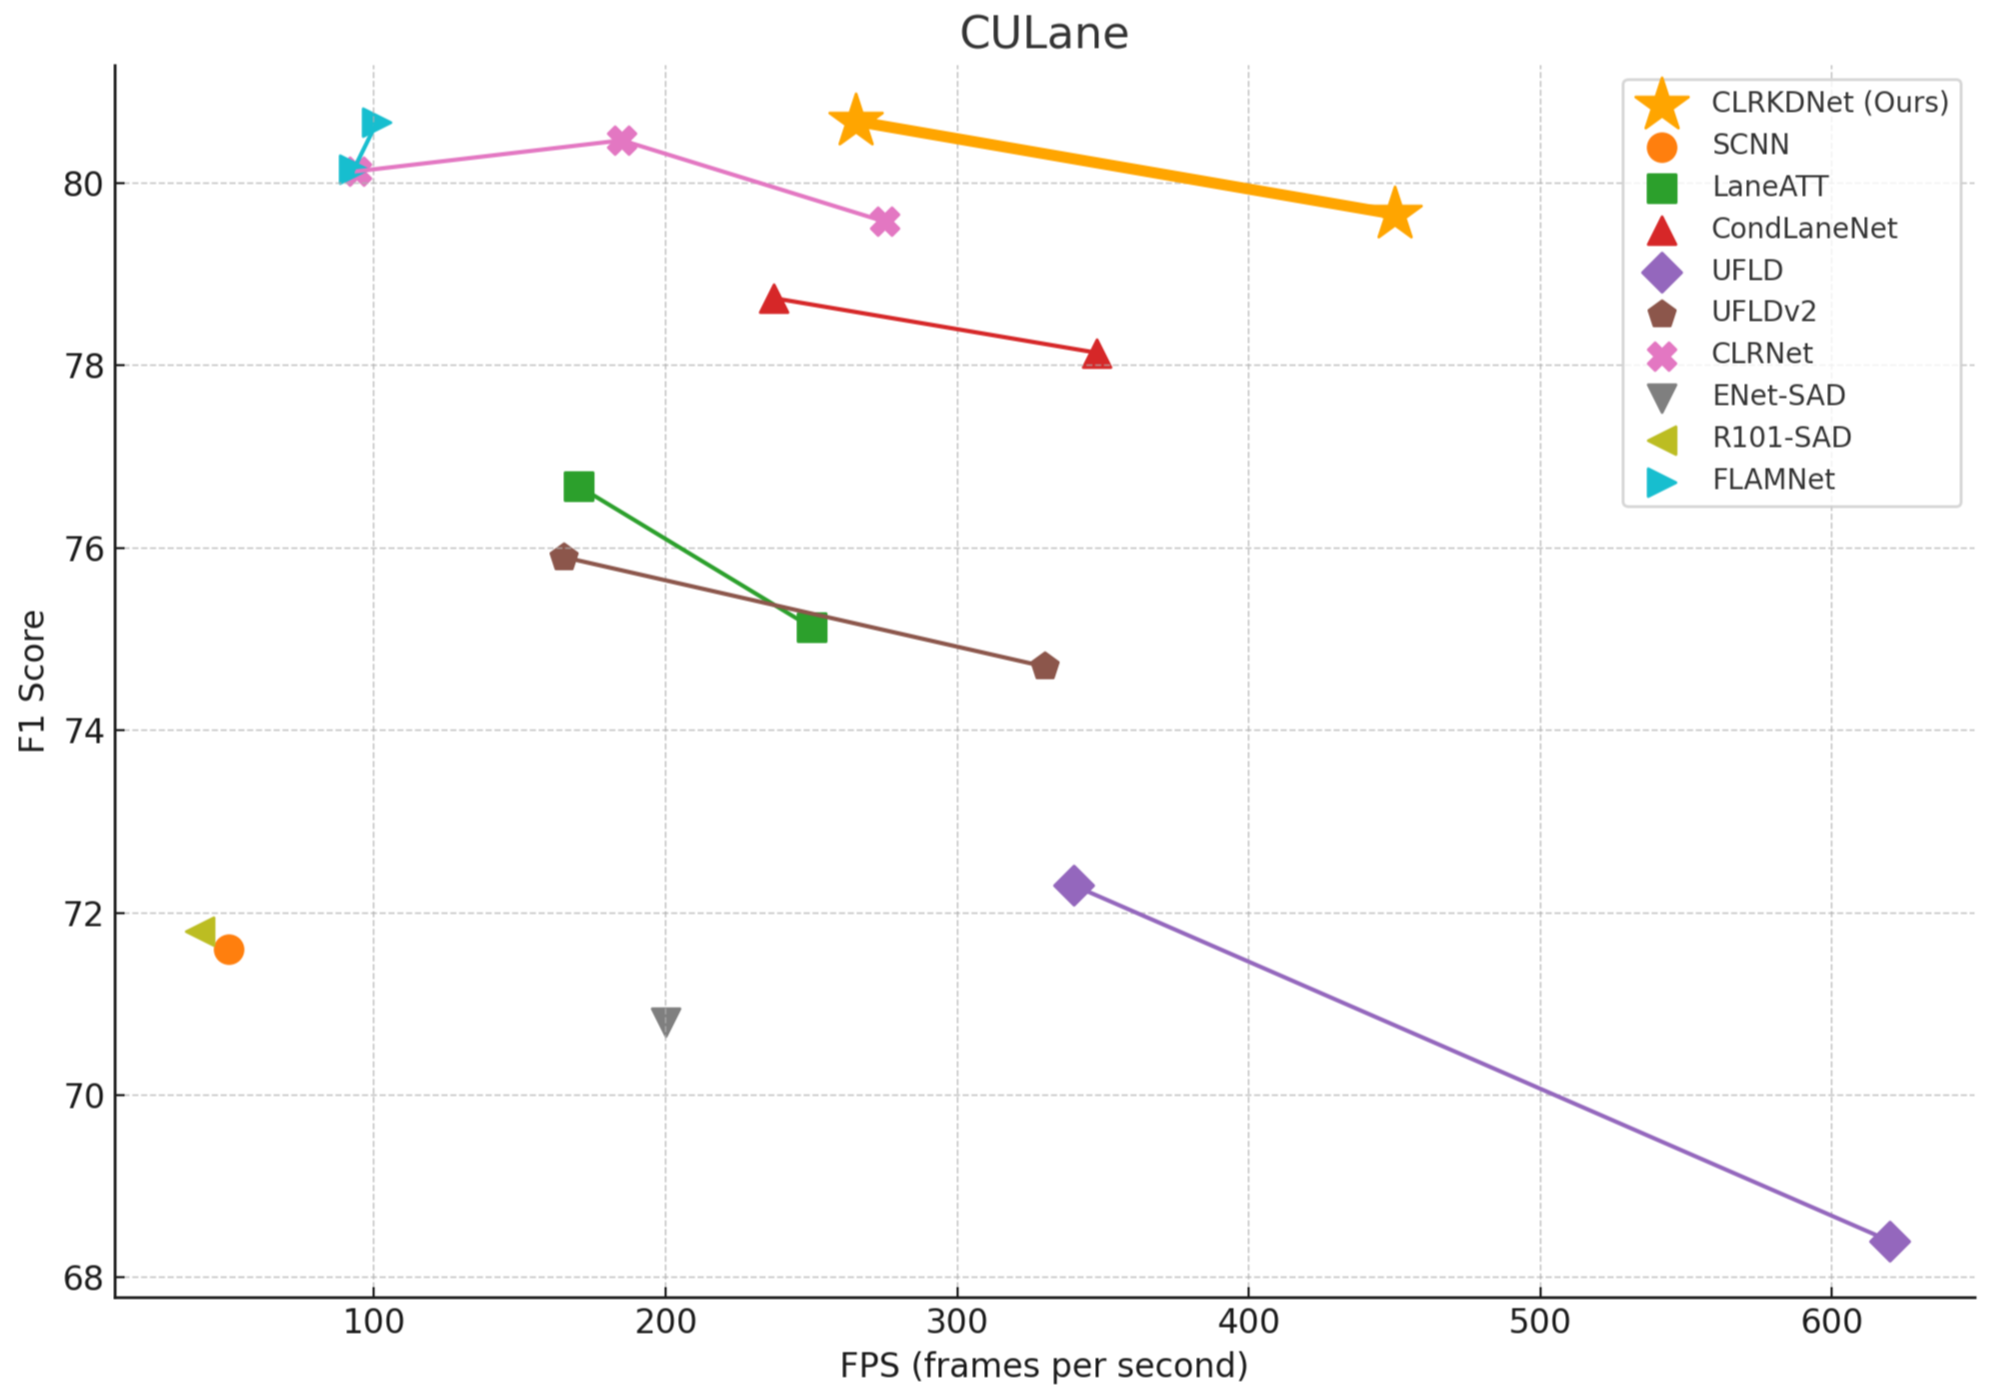 F1 vs. FPS for SOTA methods on CULane dataset